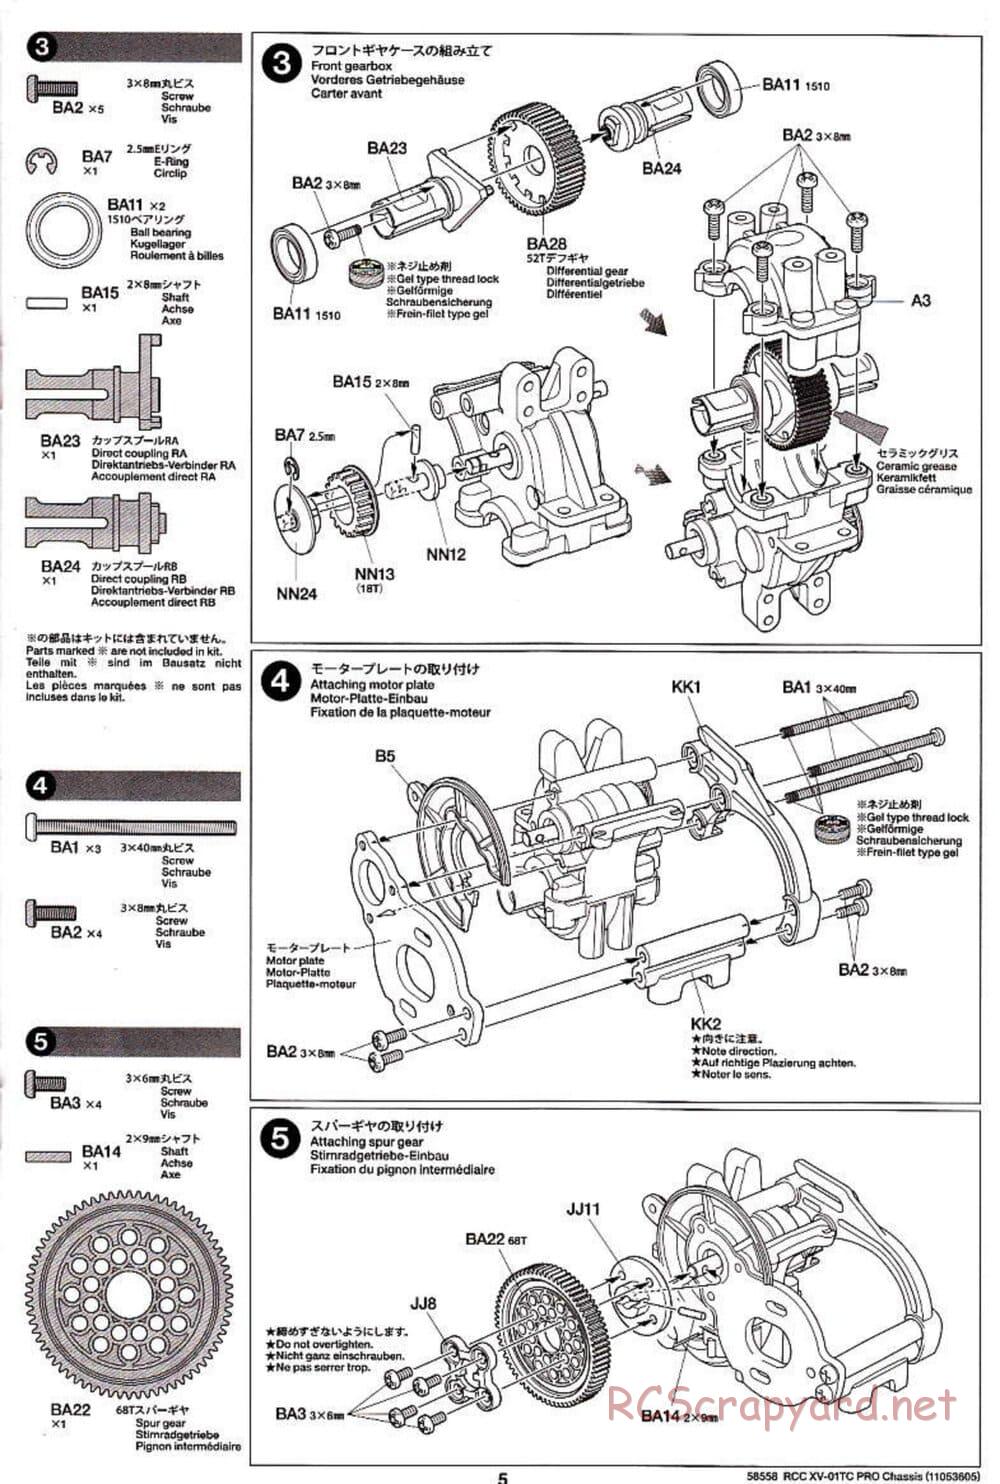 Tamiya - XV-01TC Chassis - Manual - Page 5